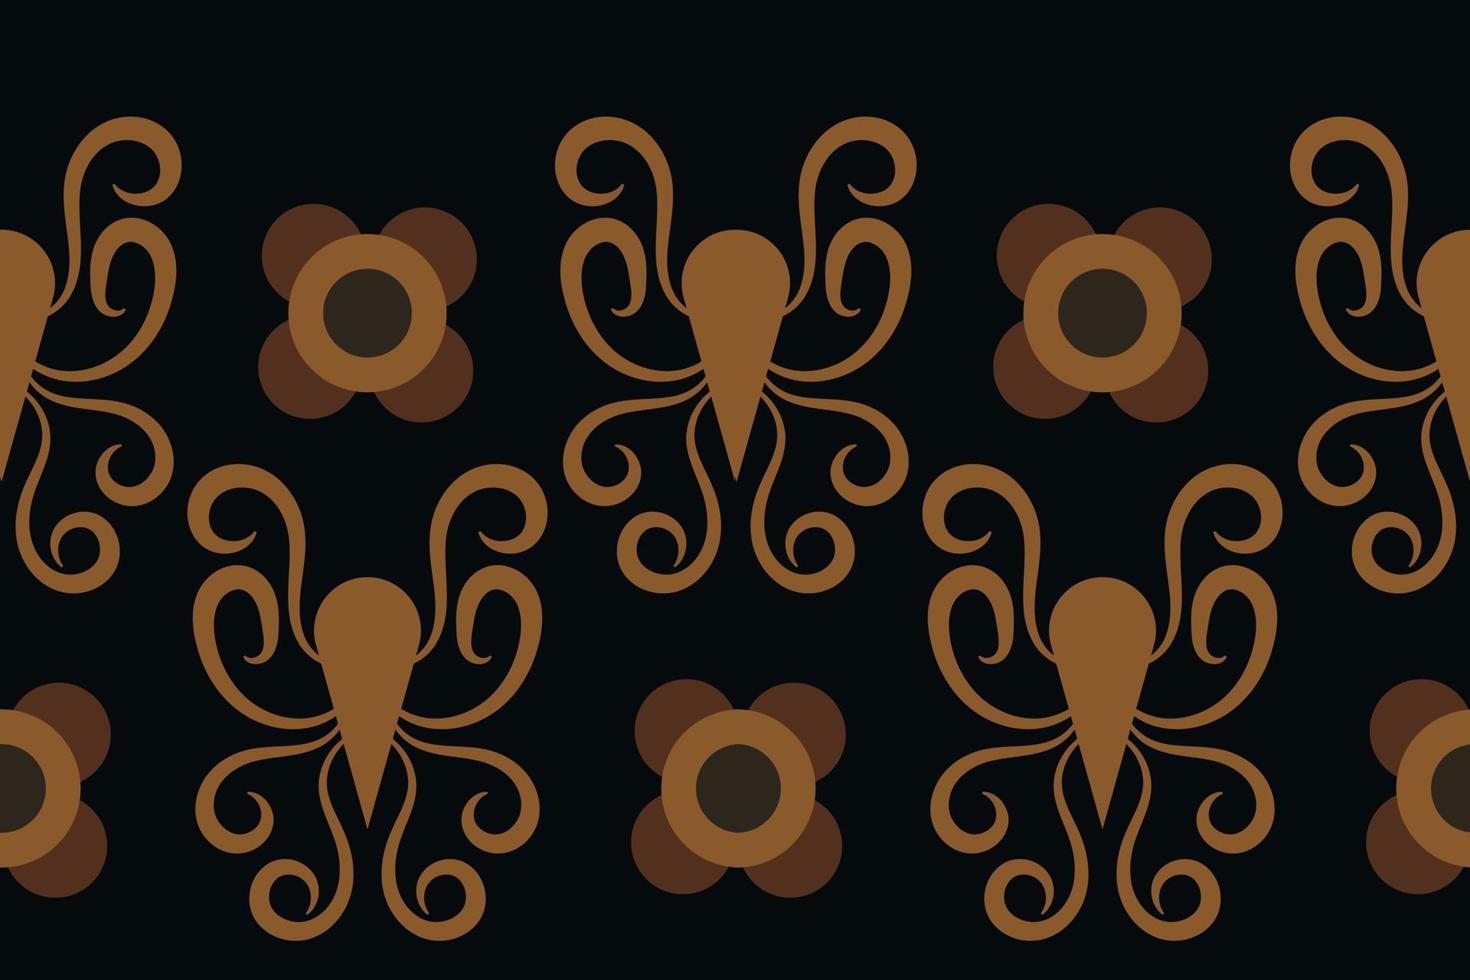 estilo geométrico padrão de tecido étnico. sarong asteca étnico padrão oriental tradicional fundo preto escuro. resumo,vetor,ilustração. use para textura, roupas, embrulhos, decoração, carpete. vetor